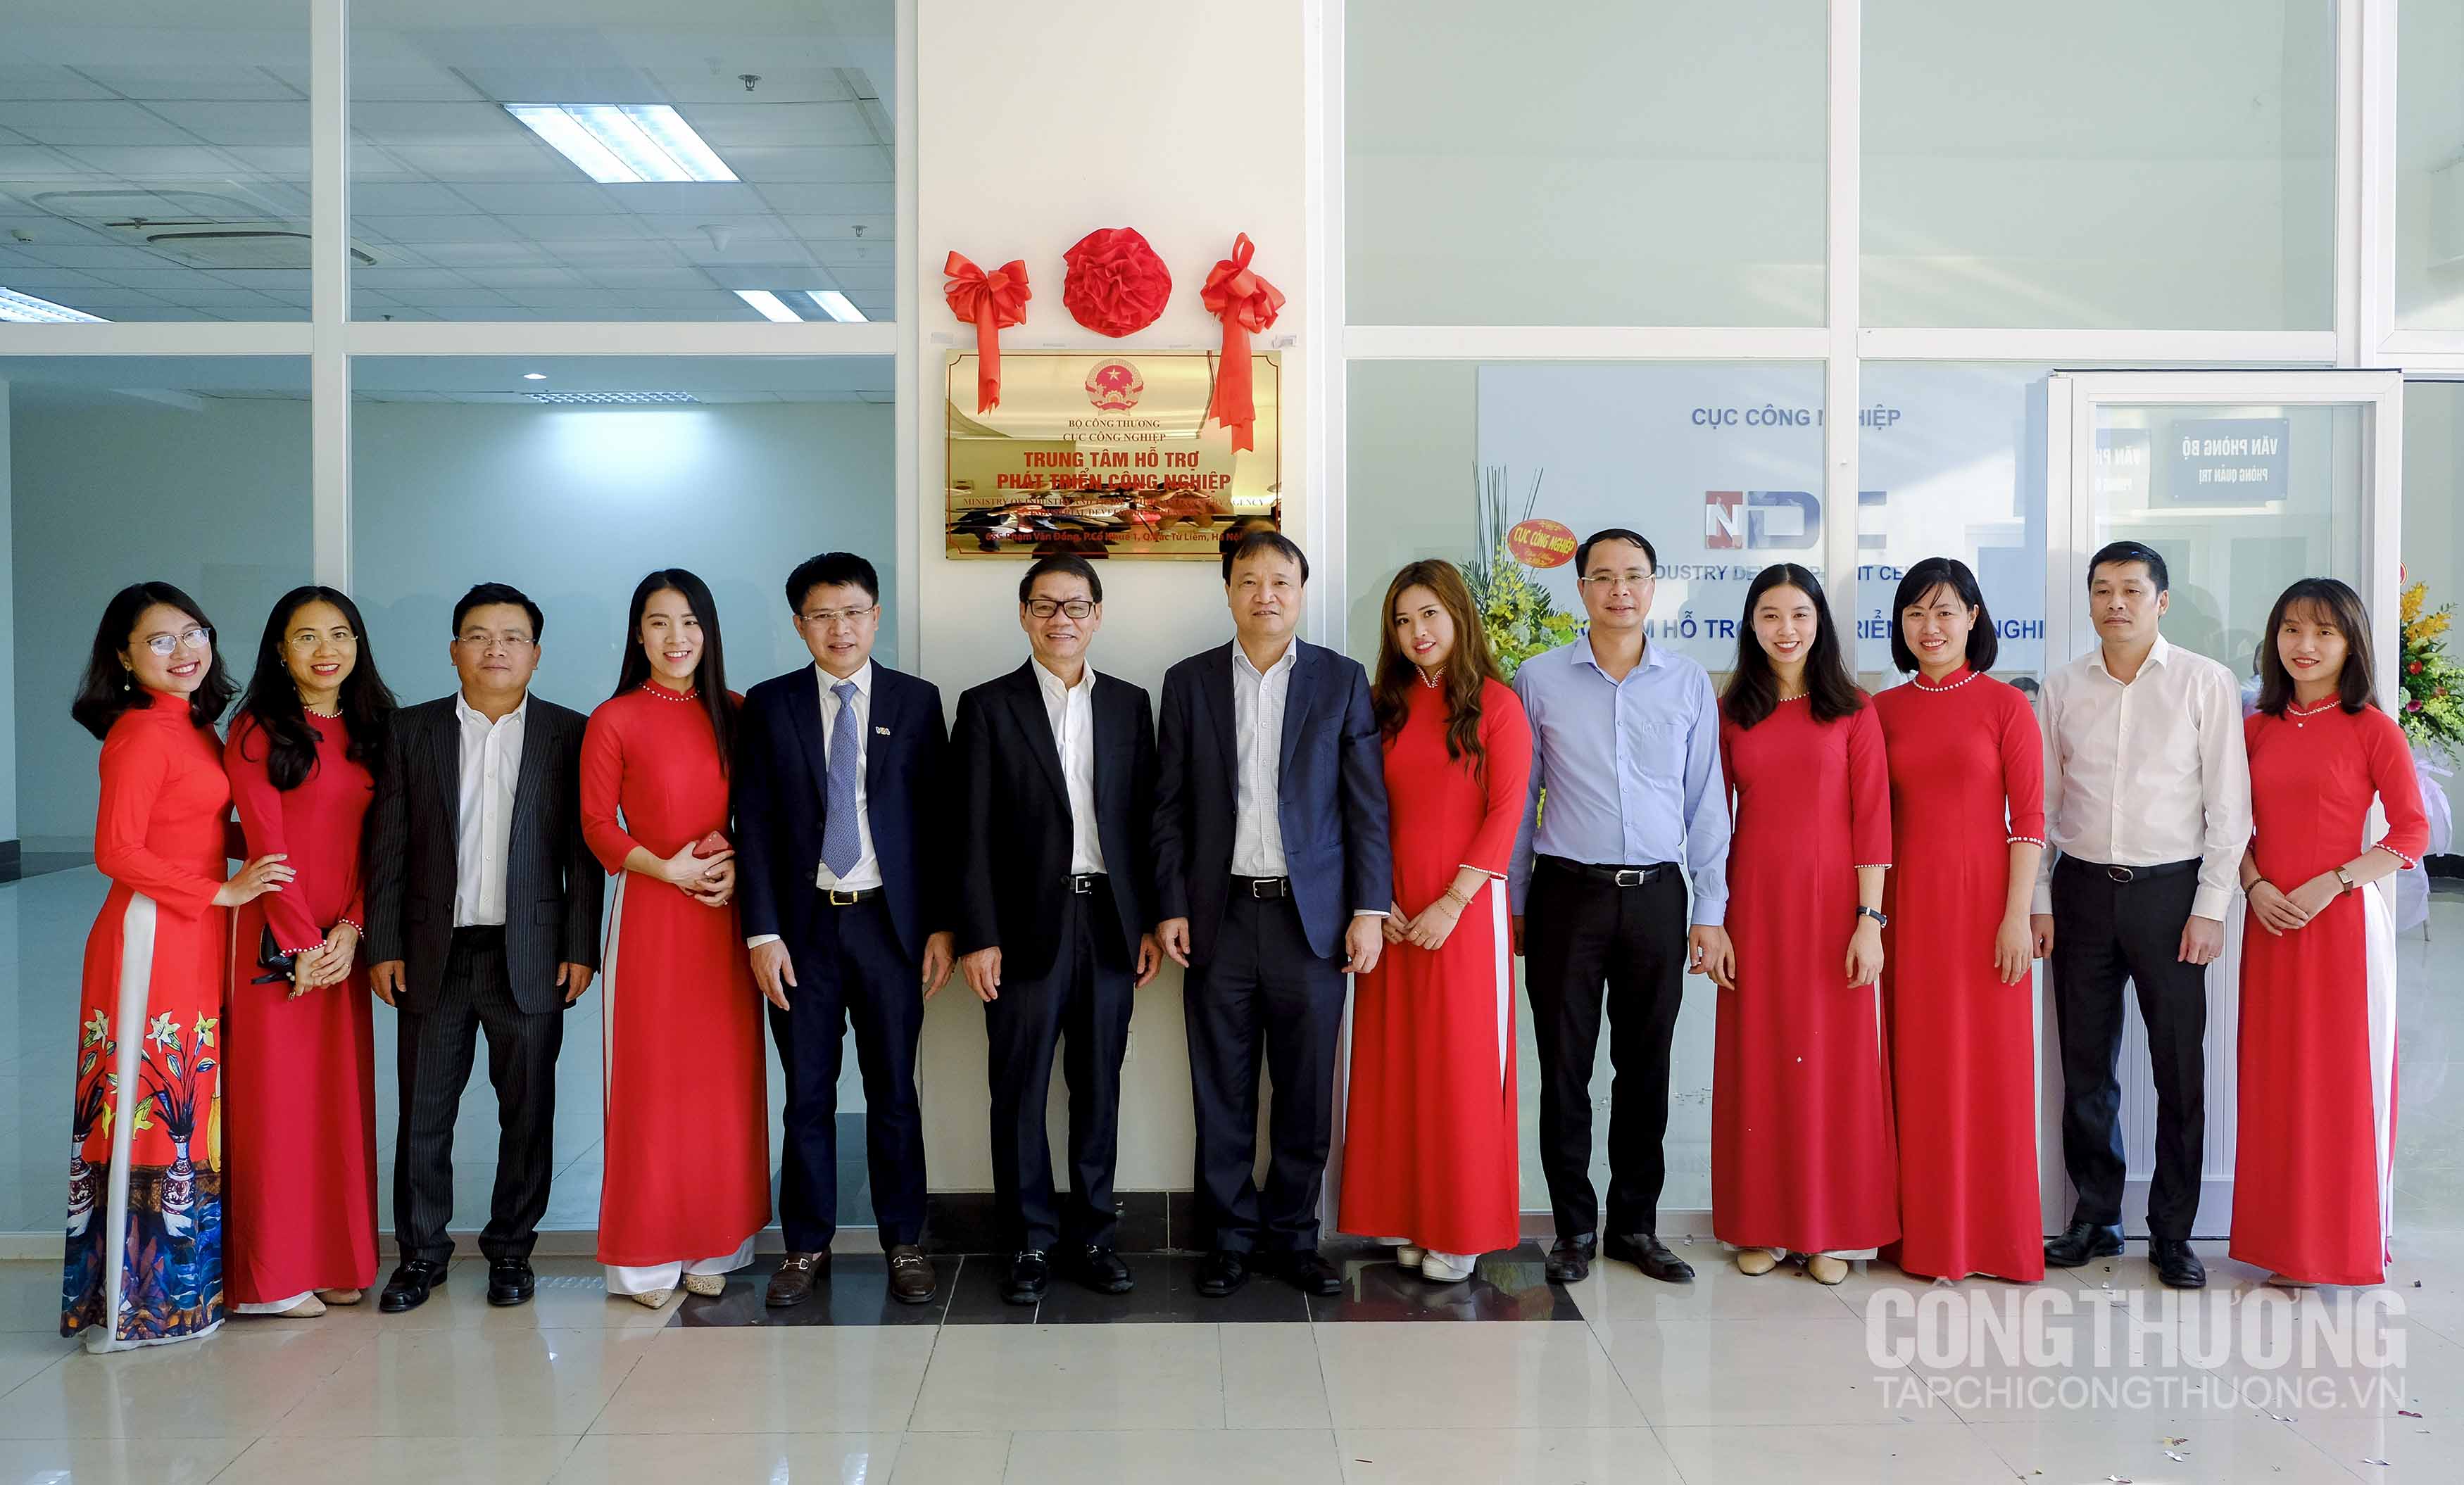 Khai trương Trung tâm hỗ trợ phát triển công nghiệp đầu tiên của Việt Nam